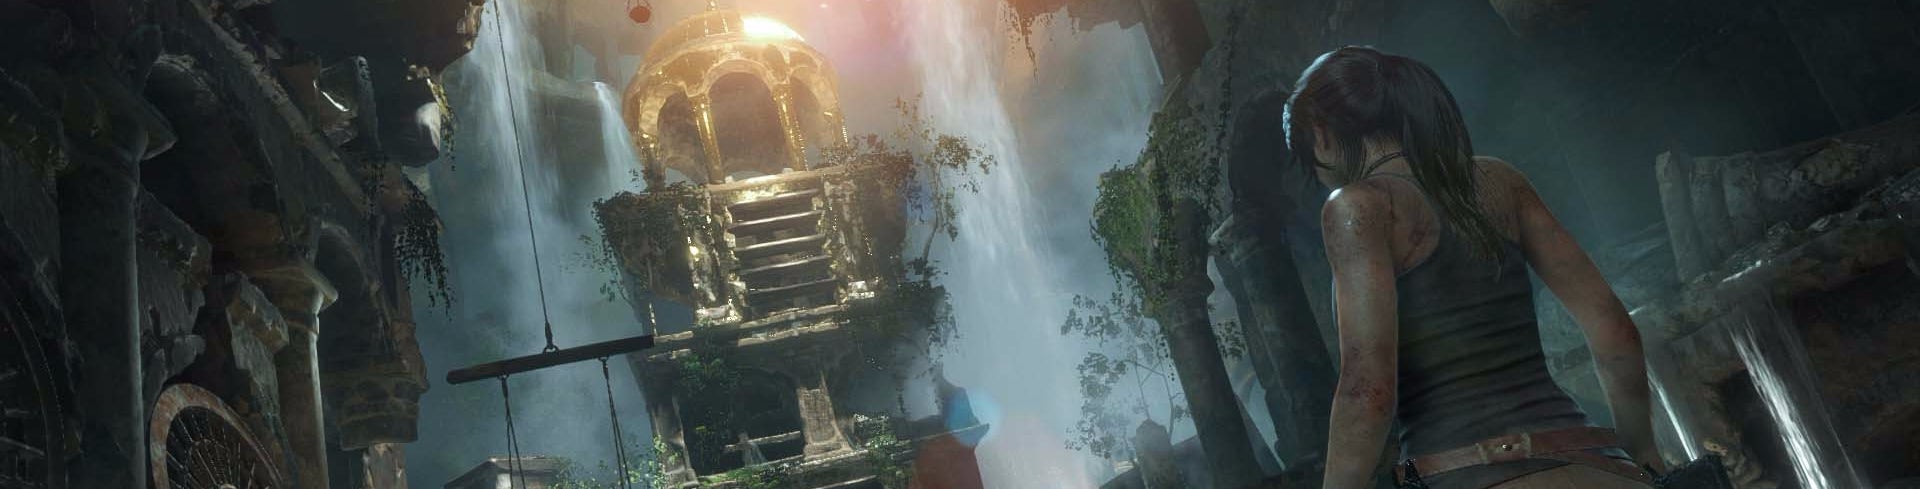 Obrazki dla Rise of the Tomb Raider błyszczy w HDR na Xbox One X